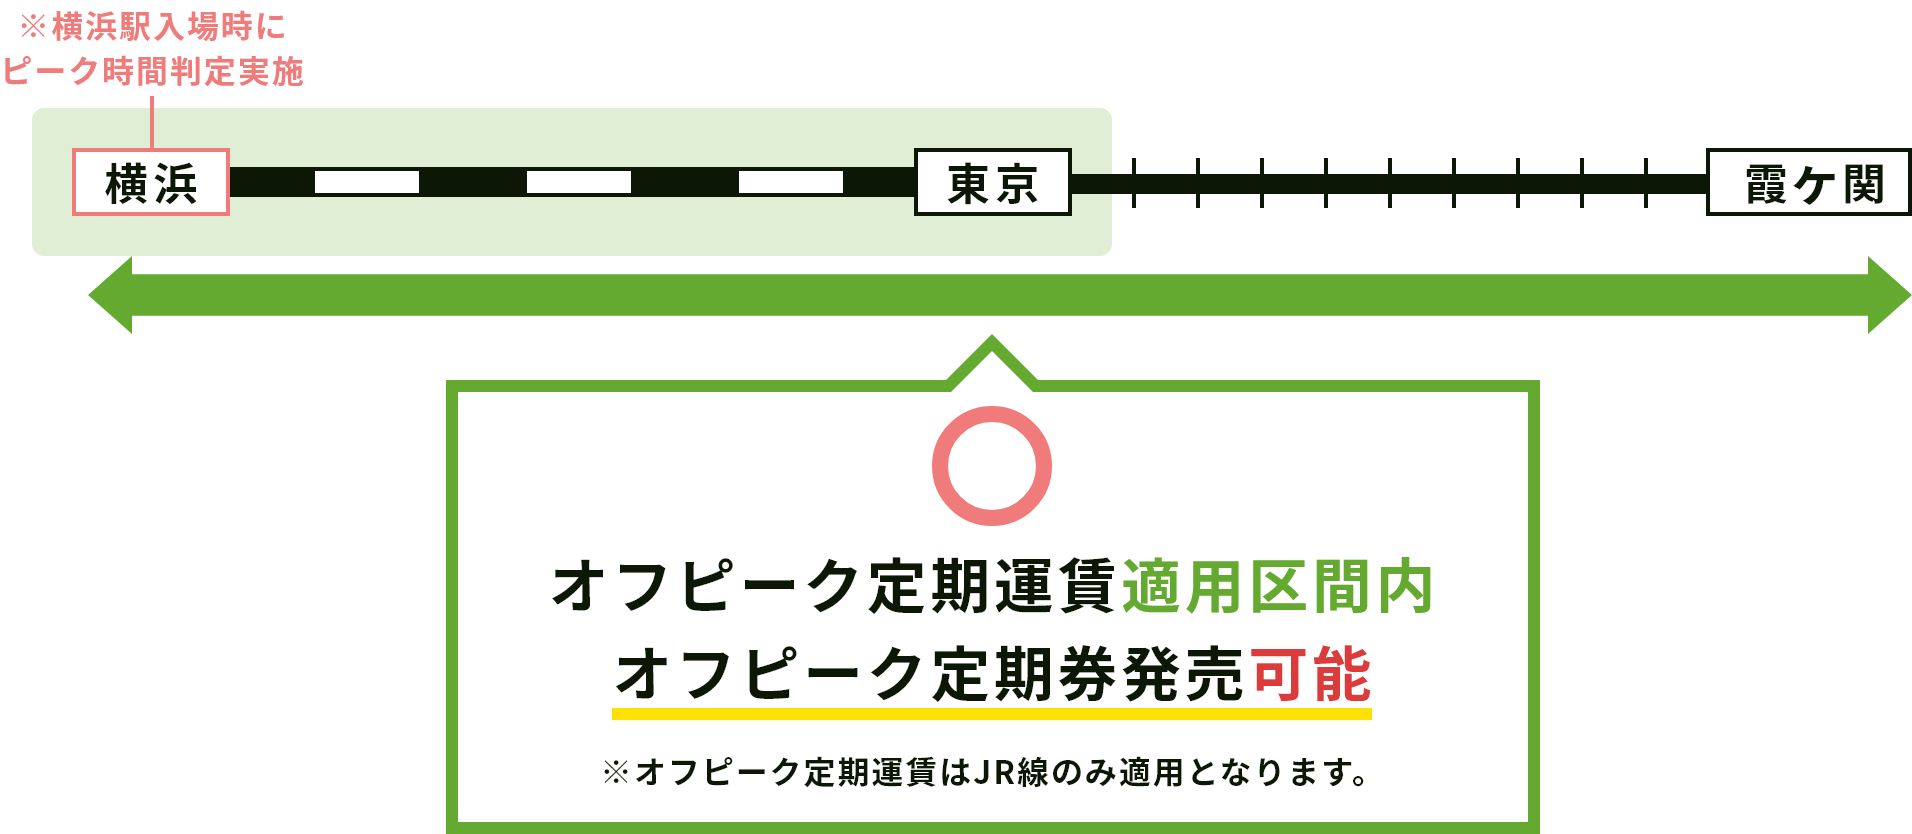 ※横浜駅入場時にピーク時間判定実施。オフピーク定期運賃適用区間内。オフピーク定期券発売可能